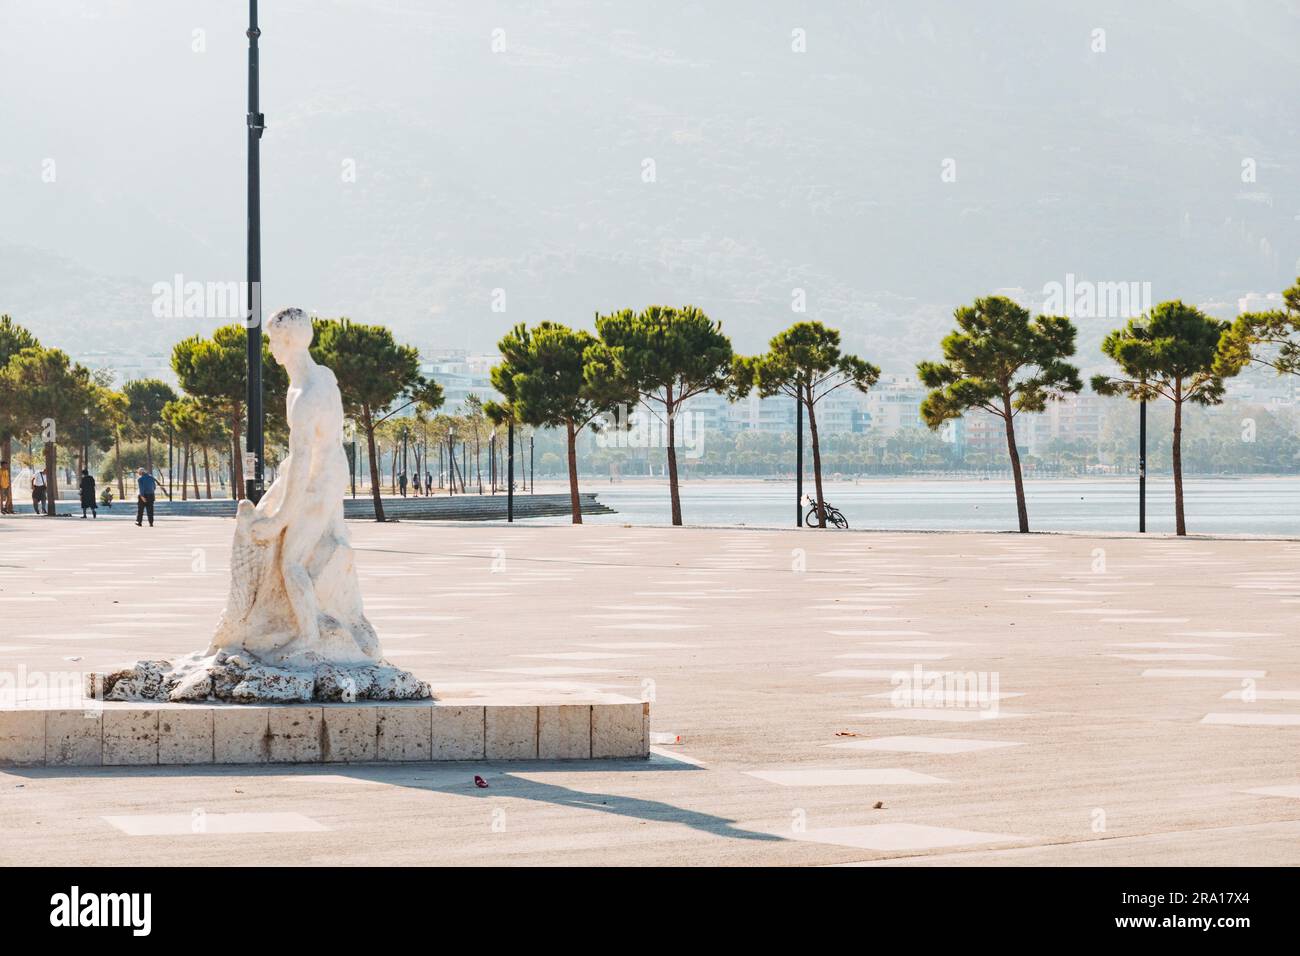 Una statua di un pescatore in una piazza nella città costiera di Vlorë, nel sud dell'Albania Foto Stock